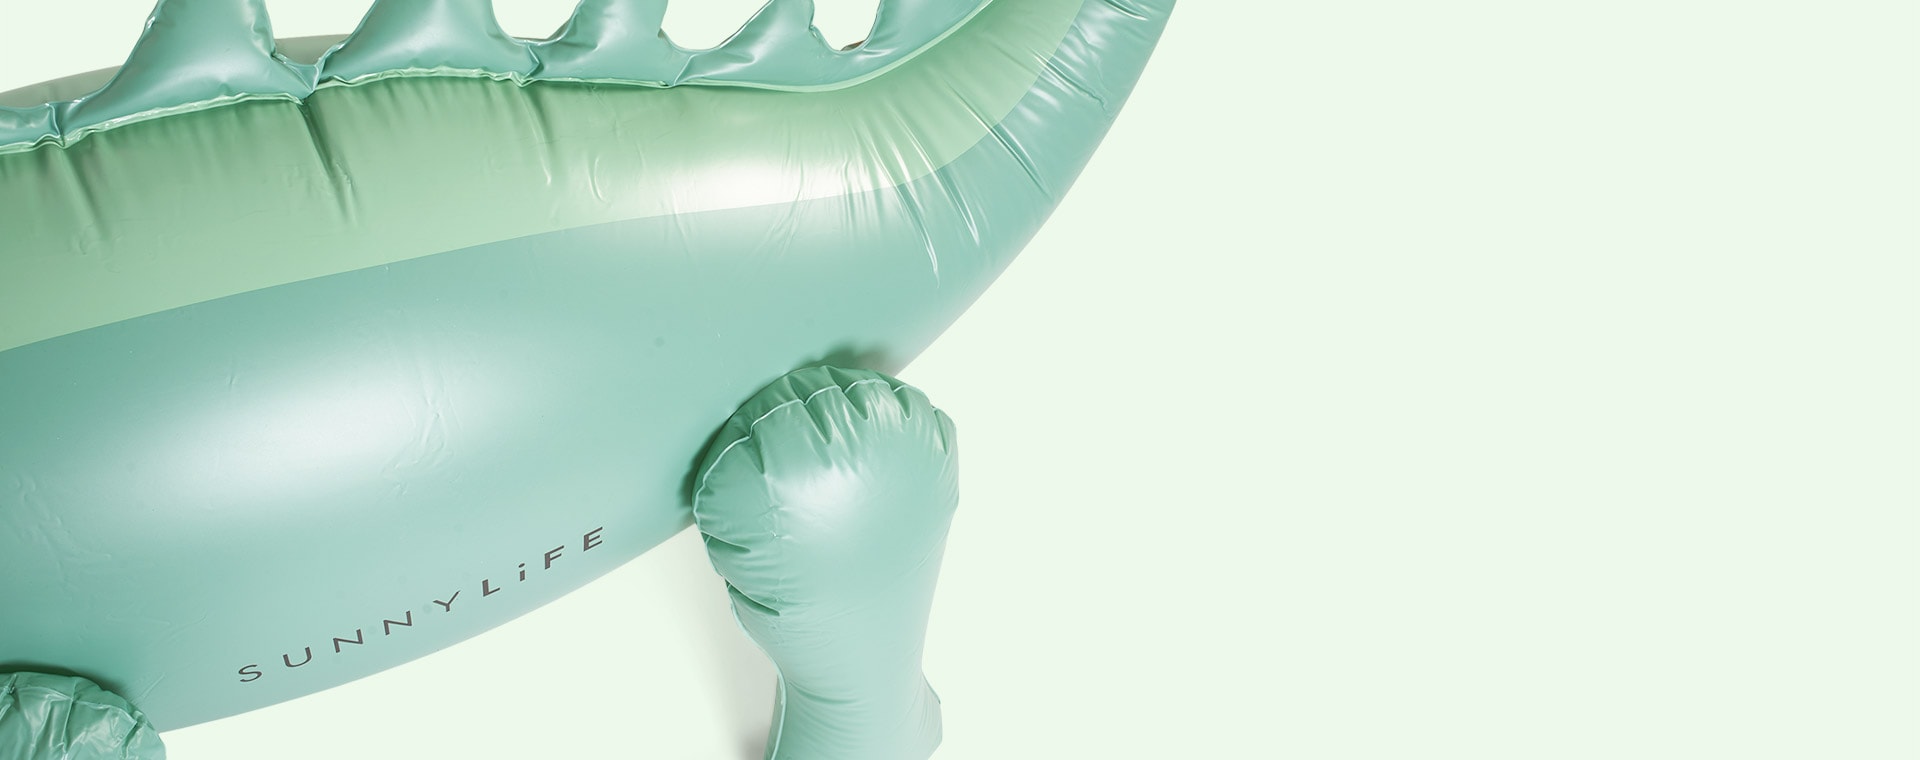 Dinosaur SUNNYLiFE Inflatable Giant Sprinkler